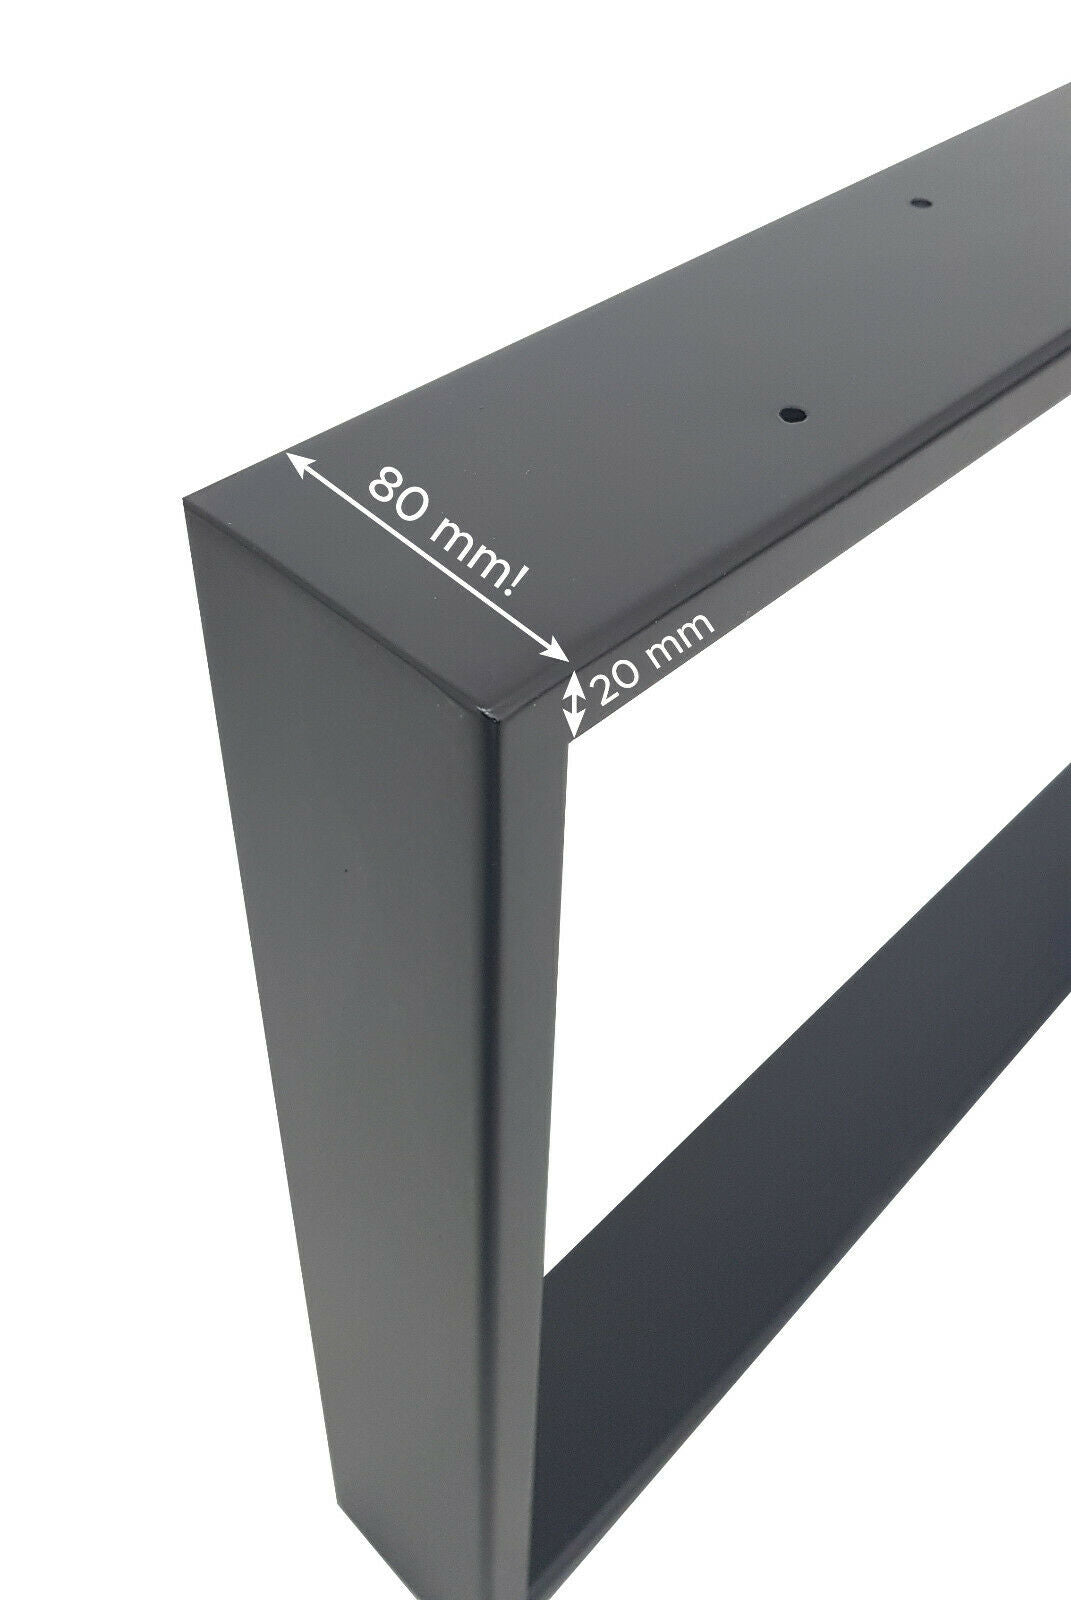 Tischgestell niedrig | schwarz | Stahlprofil 80x20x2mm | Breite 700mm | Höhe 430mm